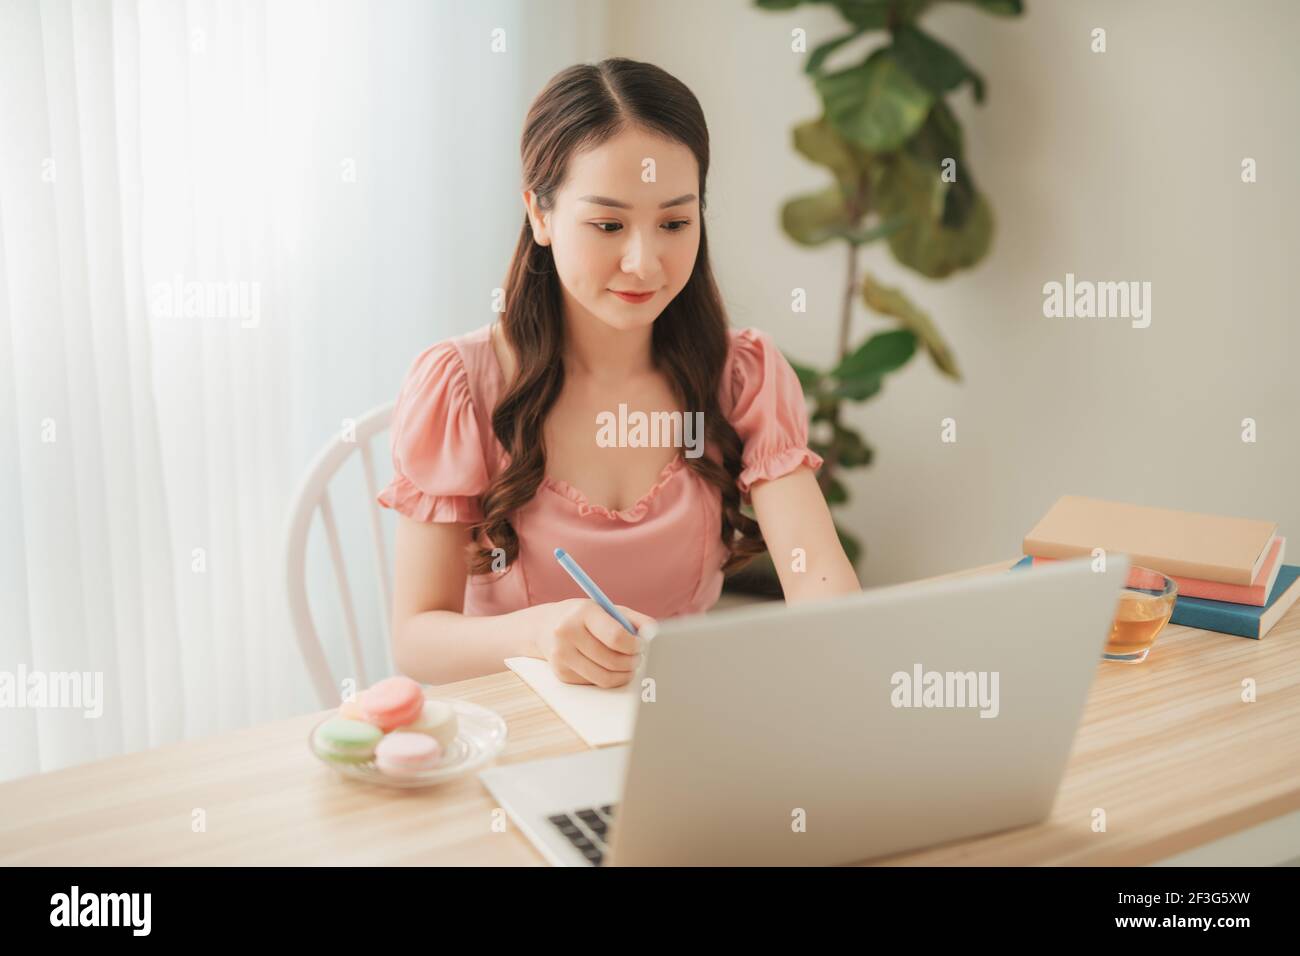 Lächelnde asiatische Frau arbeitet mit Laptop auf Tisch in weiß Home Office im Innenbereich Stockfoto